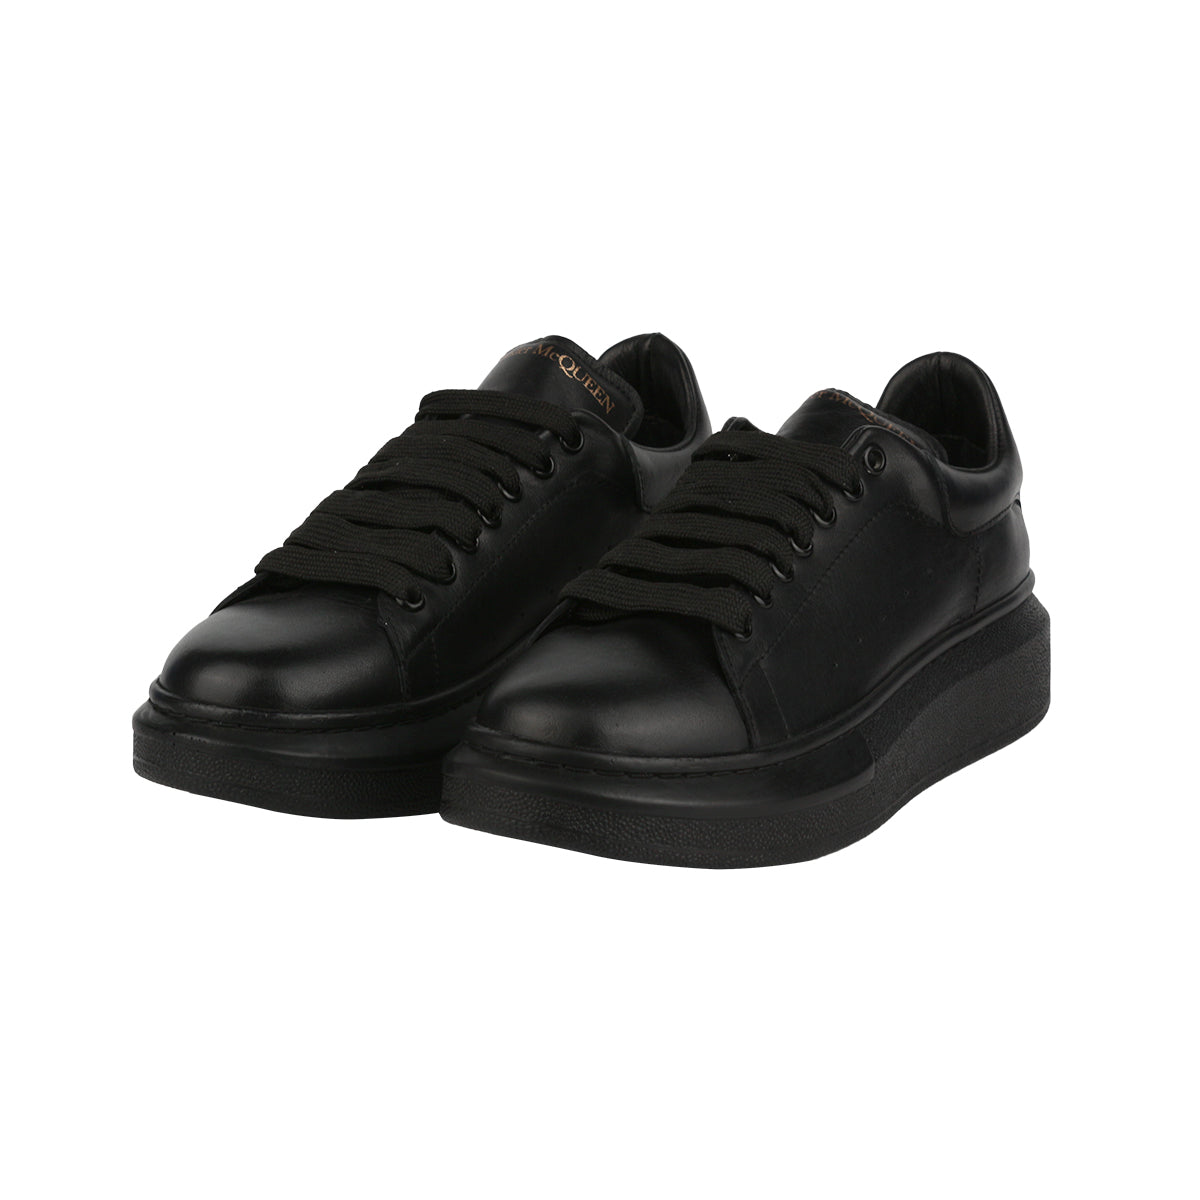 Alexander McQueen Kadın Hakiki Deri Bağcıklı Siyah Sneaker Ayakkabı